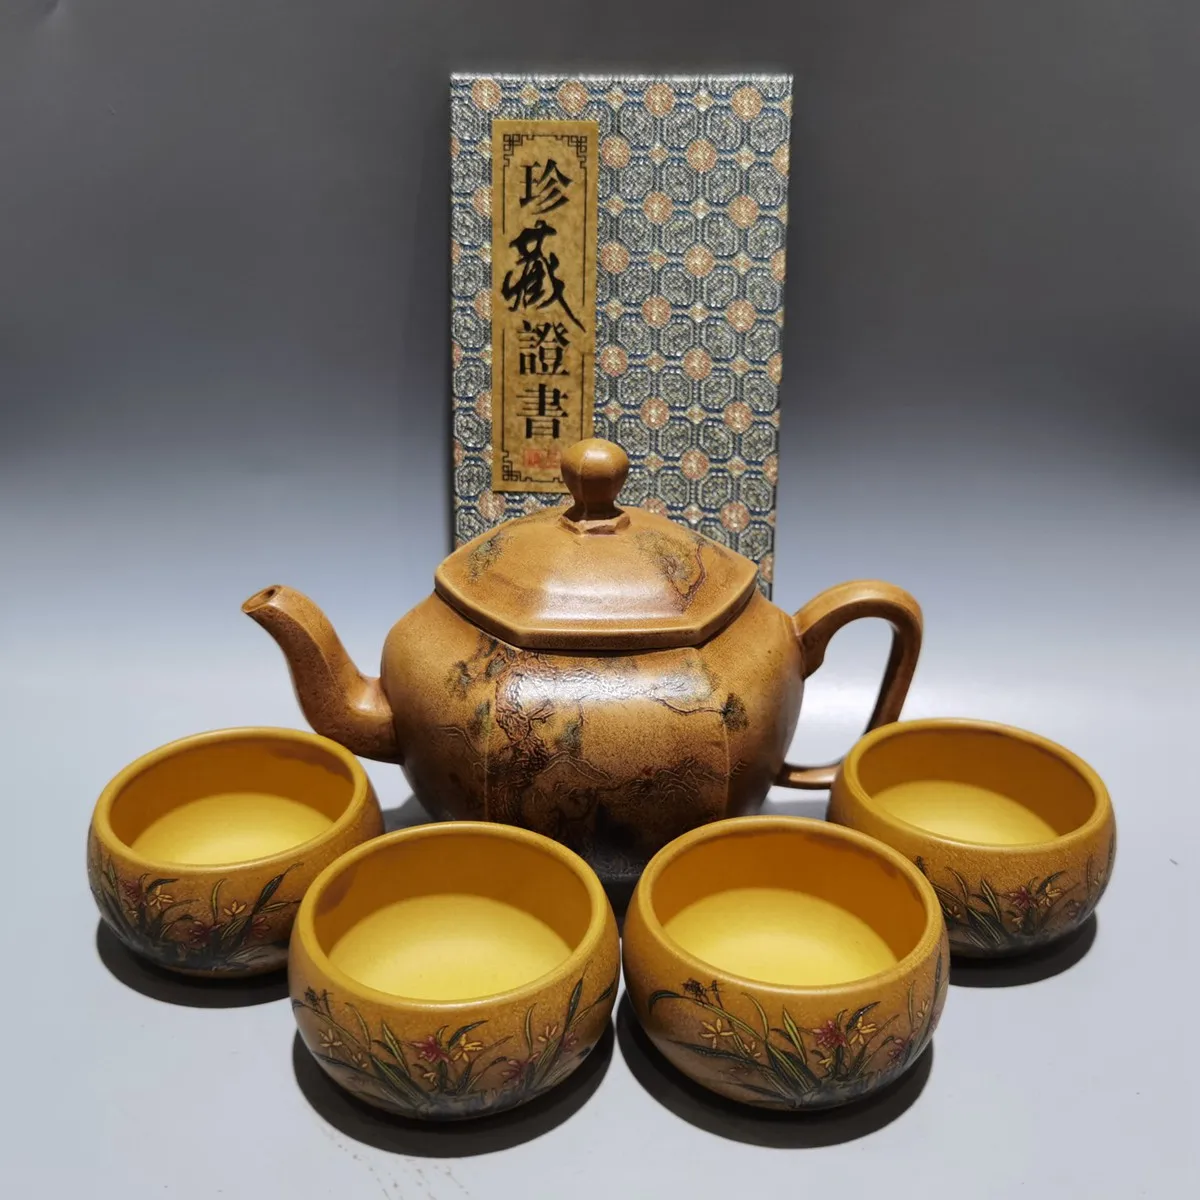 

Набор китайских глиняных чайников Yixing Zisha, шестигранный чайник, 380 мл